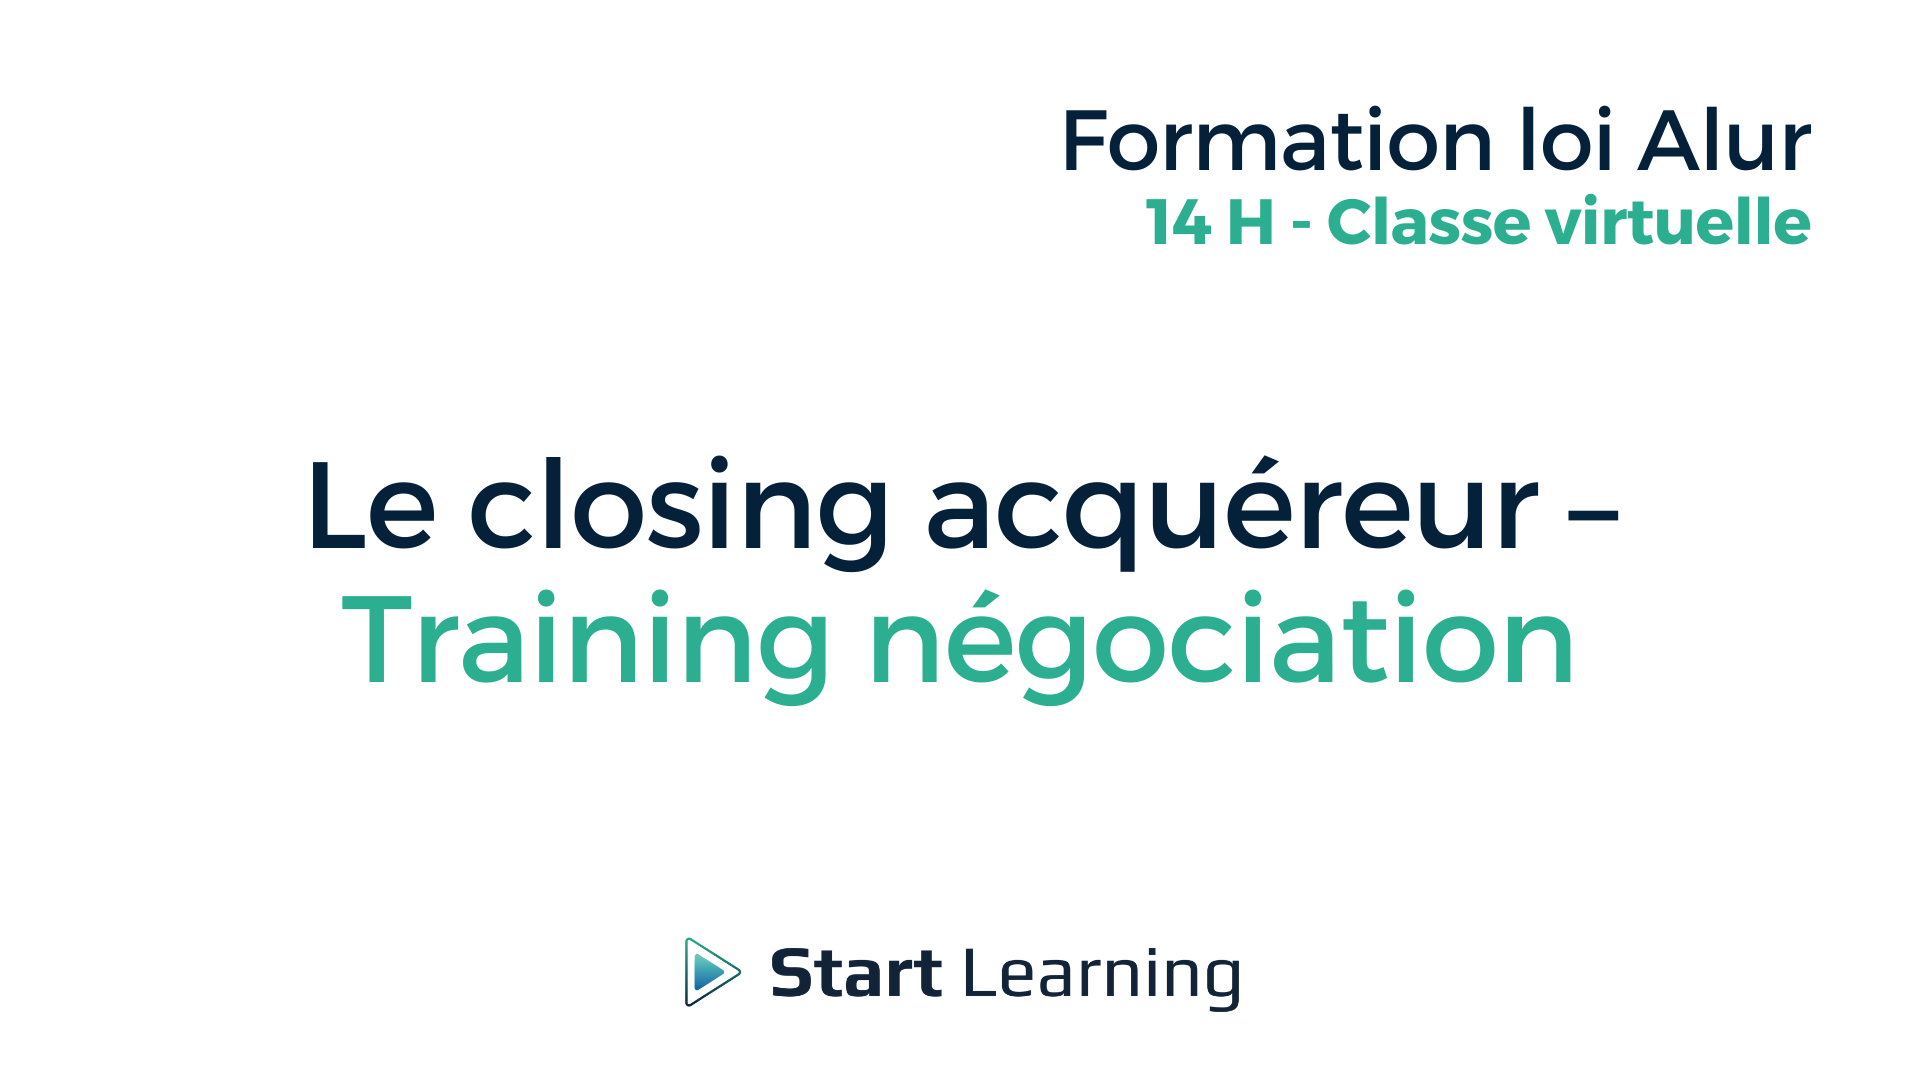 Formation loi Alur - Closing acquéreur - training négociation - Classe virtuelle